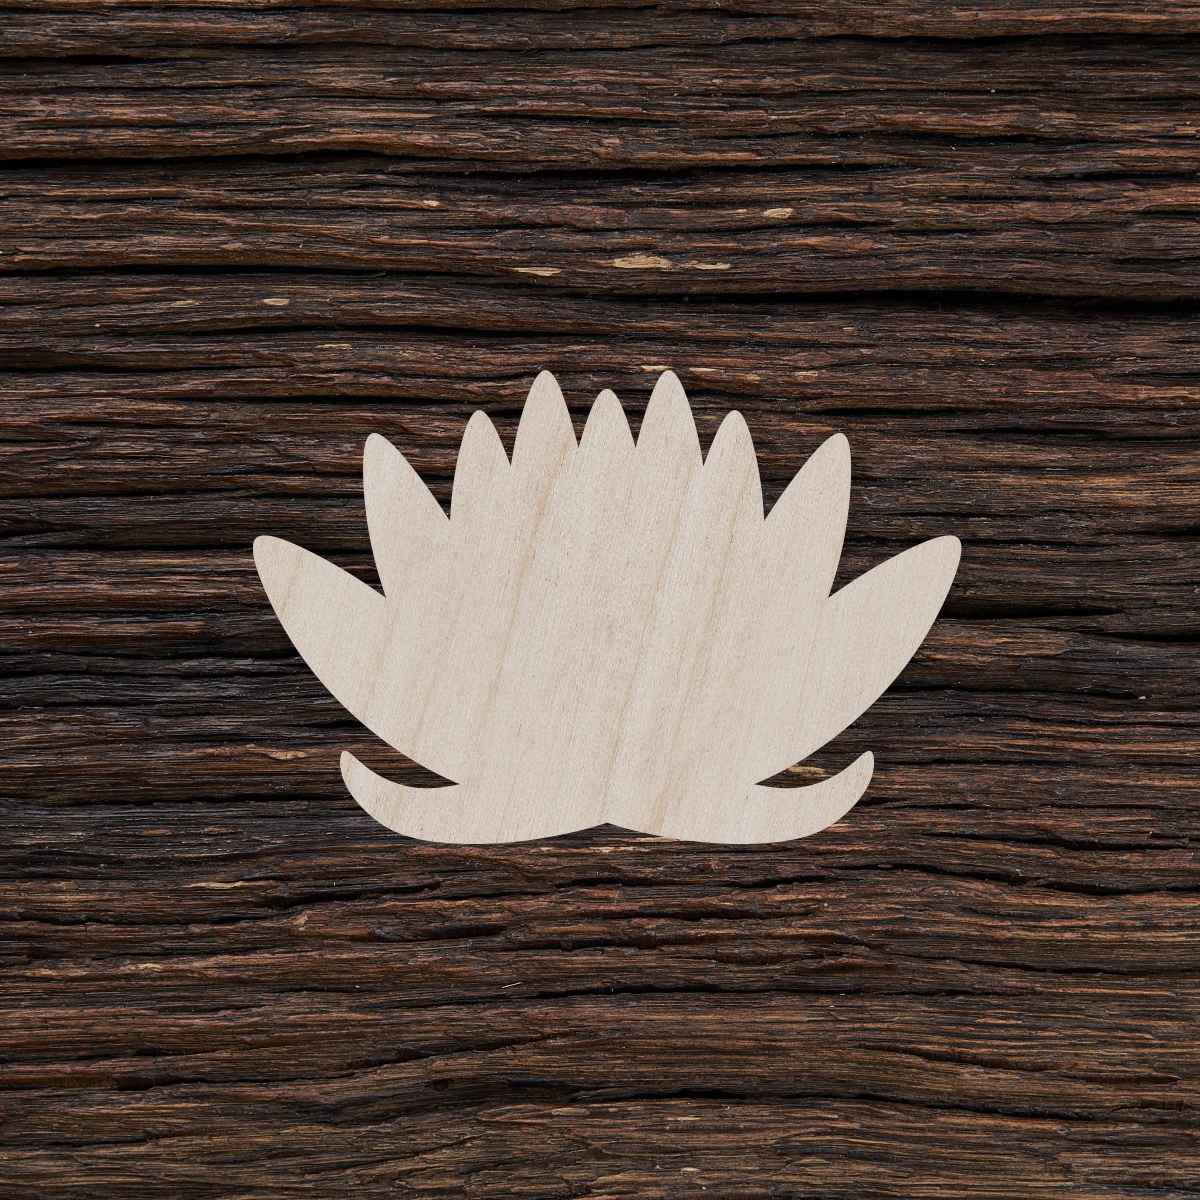 Lotuso gėlė - medinis gaminys, pjautas lazeriu - dekoravimui ir dažymui 